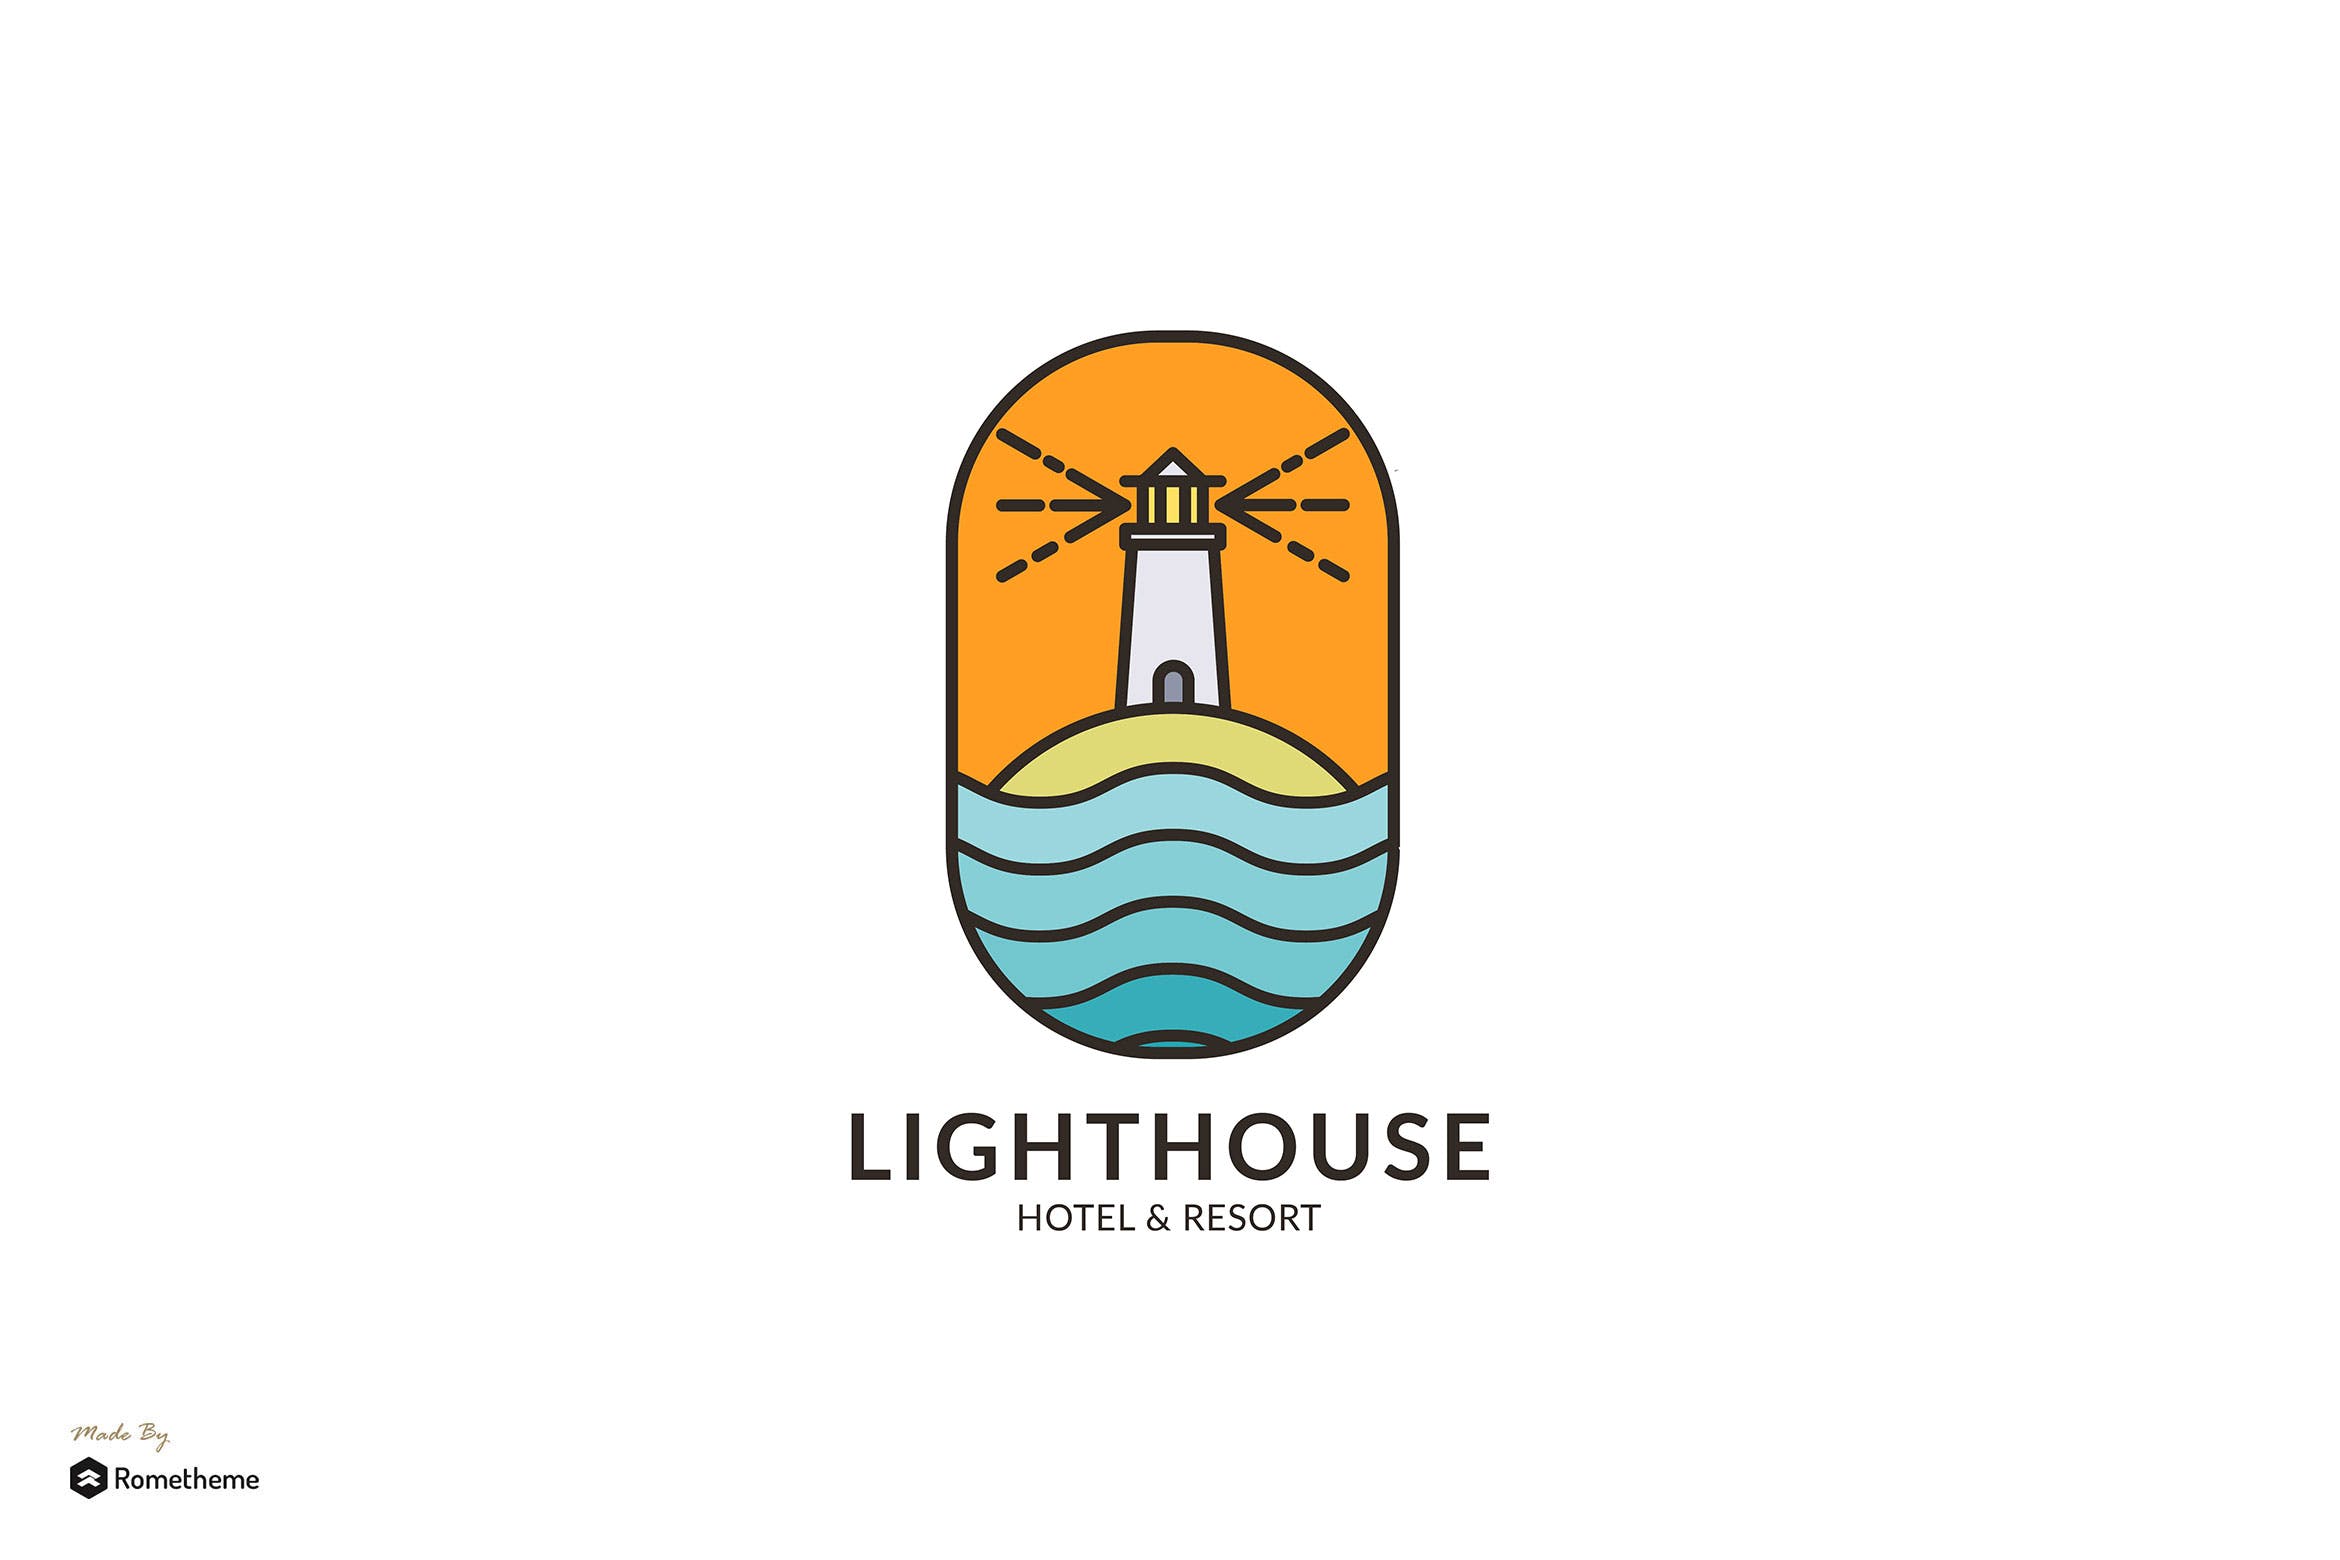 灯塔酒店/度假村商标&品牌Logo设计16设计网精选模板 Lighthouse Hotel & Resort – Logo Template RB插图